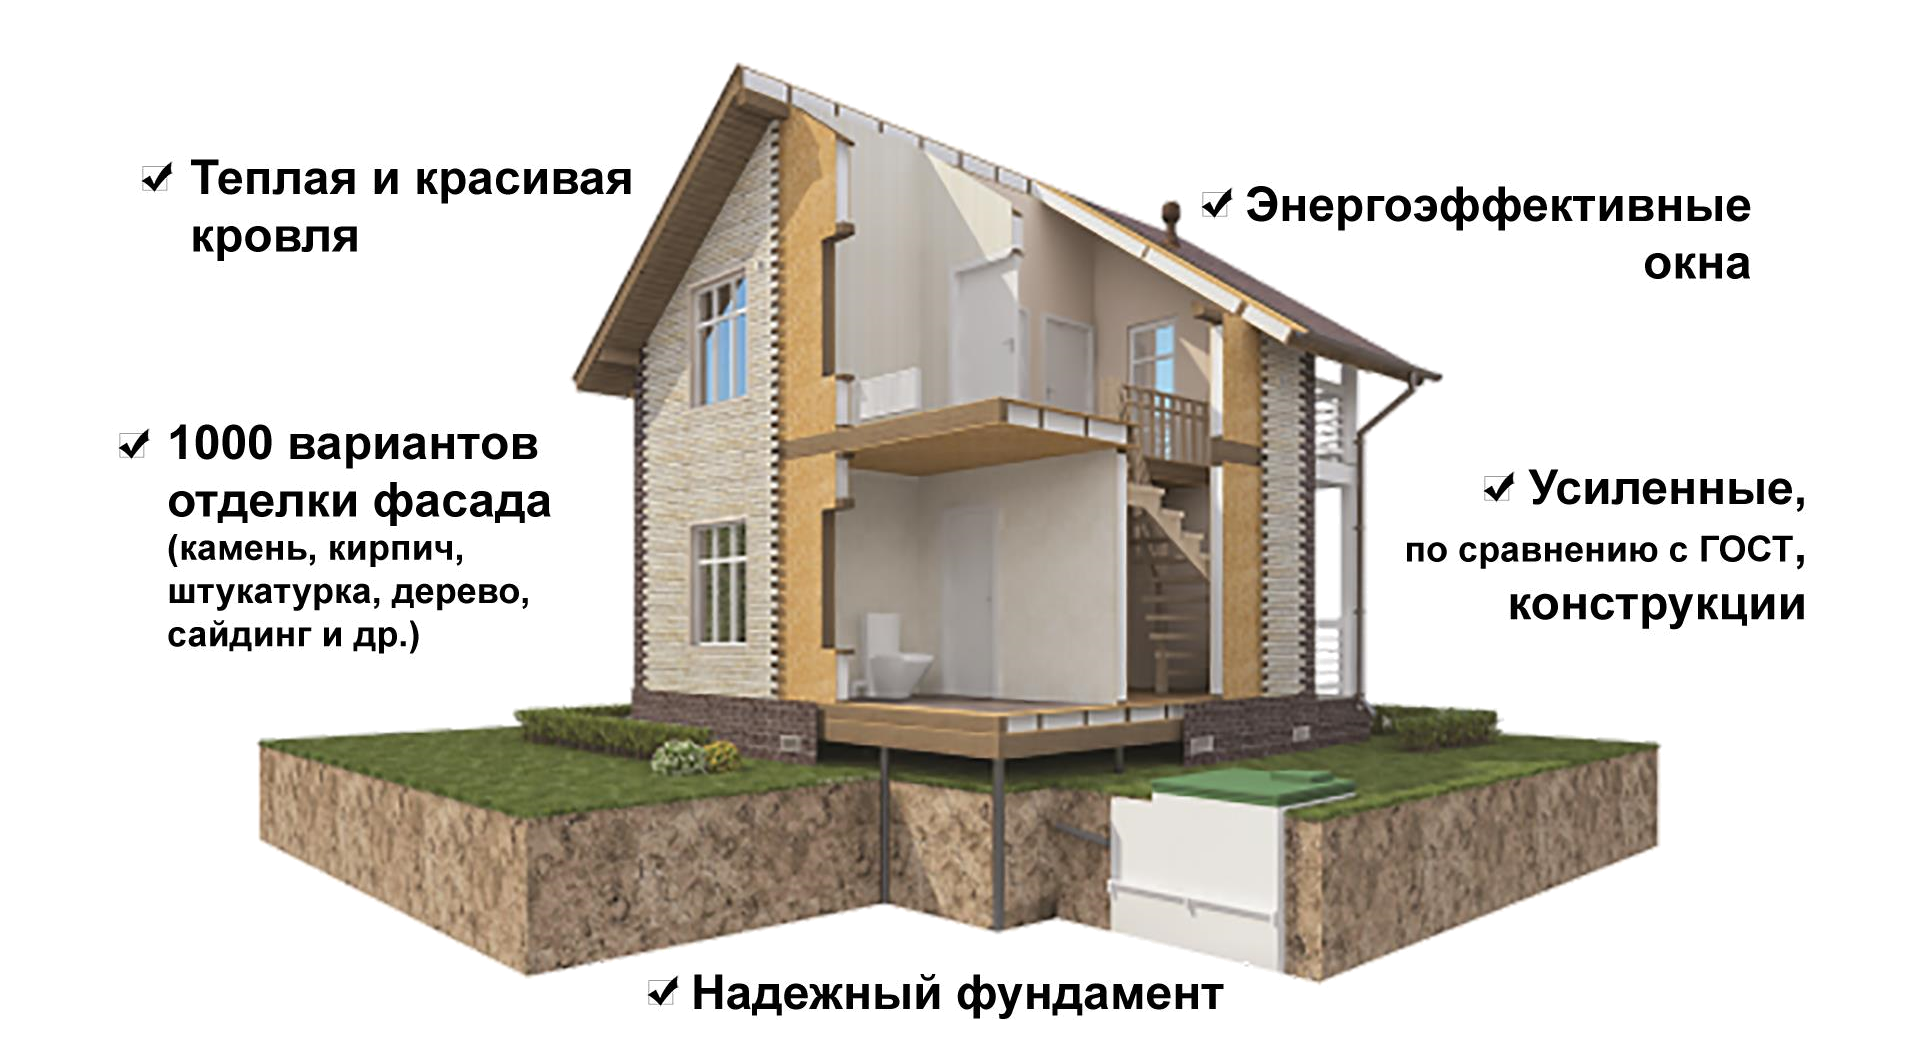 Плюсы и минусы дома из газоблоков: стоит ли использовать при строительстве, а также отзывы владельцев таких помещений